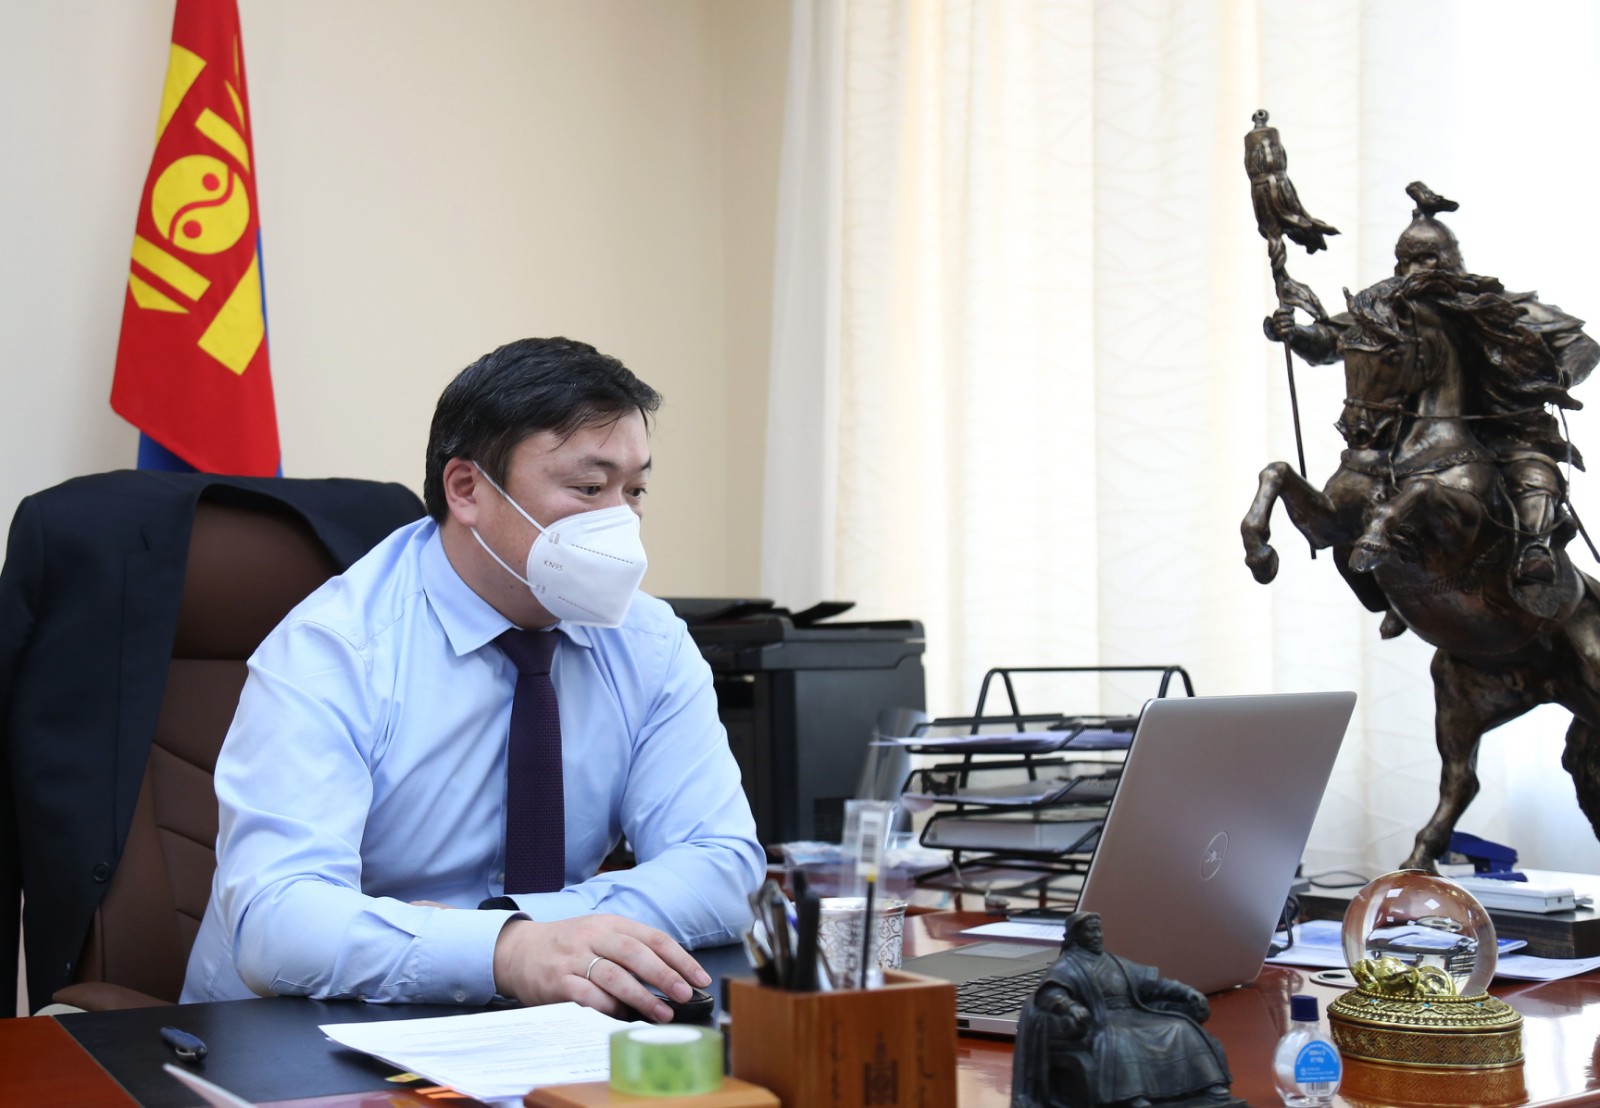 2030 усны нөөцийн бүлгийн Монгол дахь хөтөлбөрийн удирдах зөвлөлийн ээлжит хуралдаан боллоо